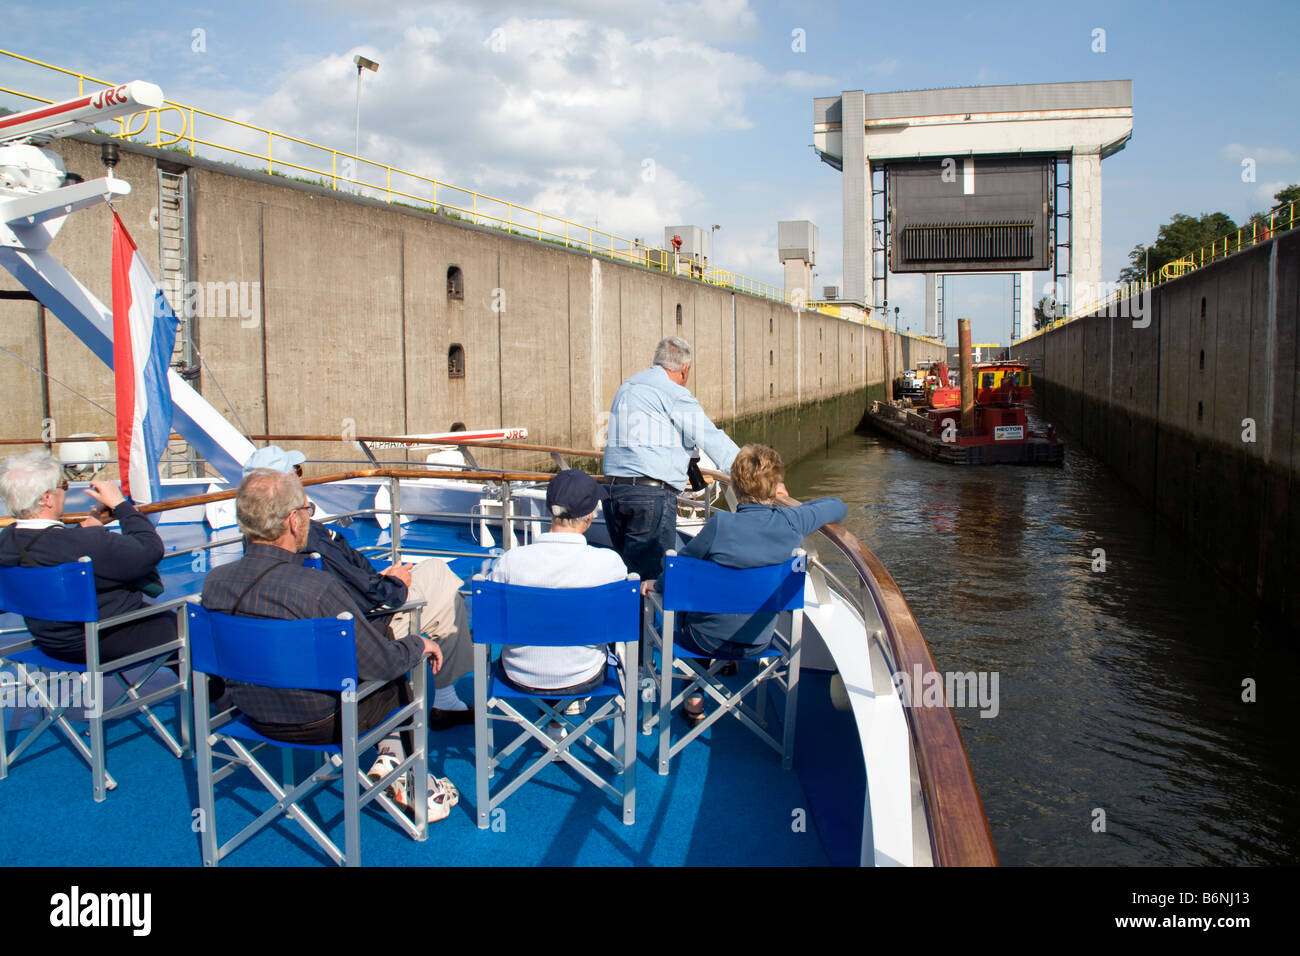 Amsterdam-Rhine Canal, Prinz Bernhard lock de la proue de navire de croisière fleuve européen avec les passagers Banque D'Images